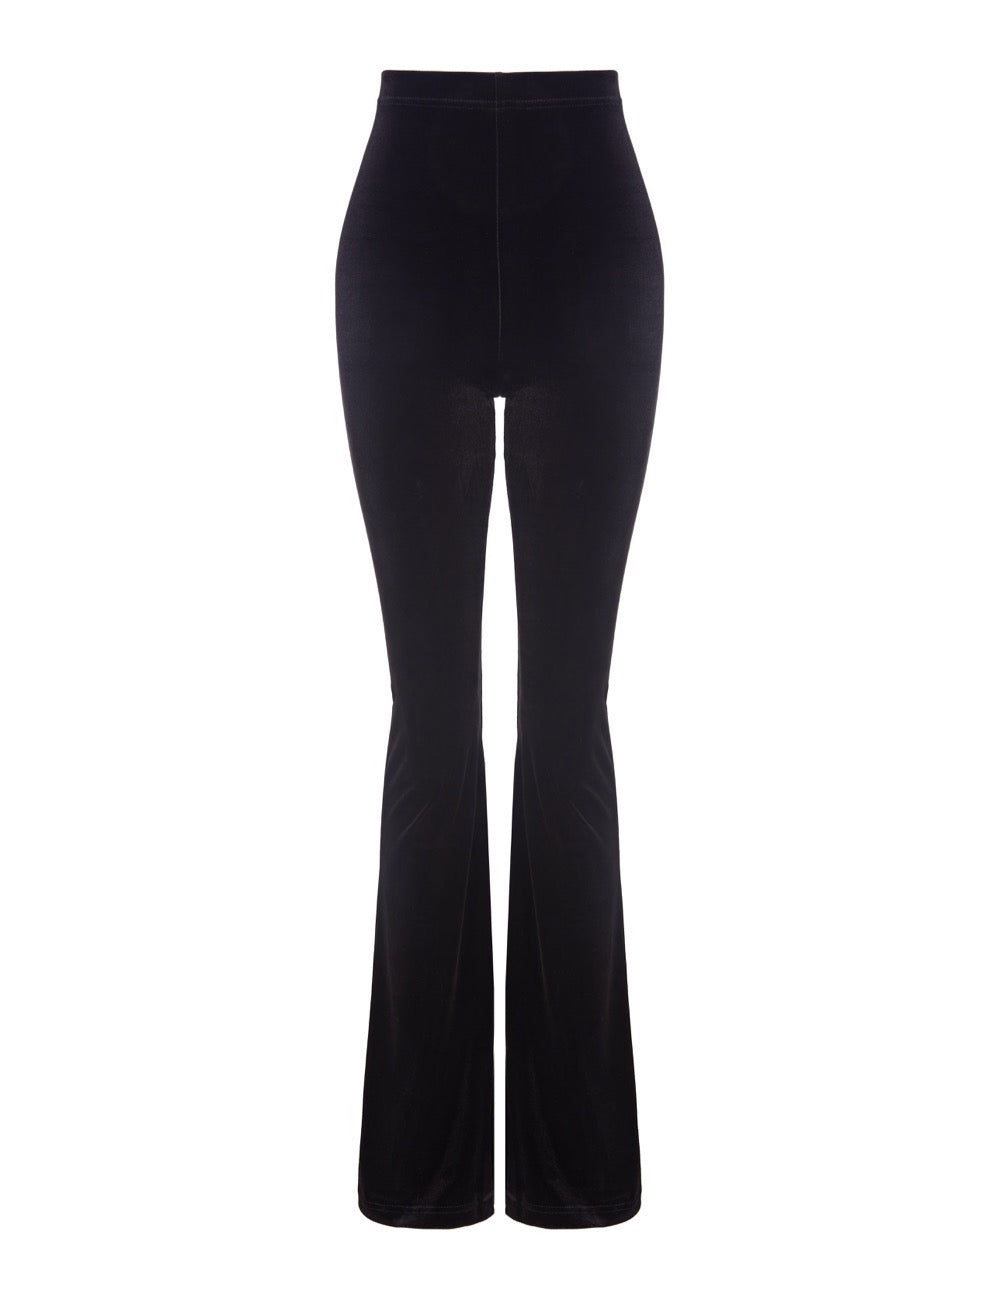 black velvet flares sas womens clothing uk